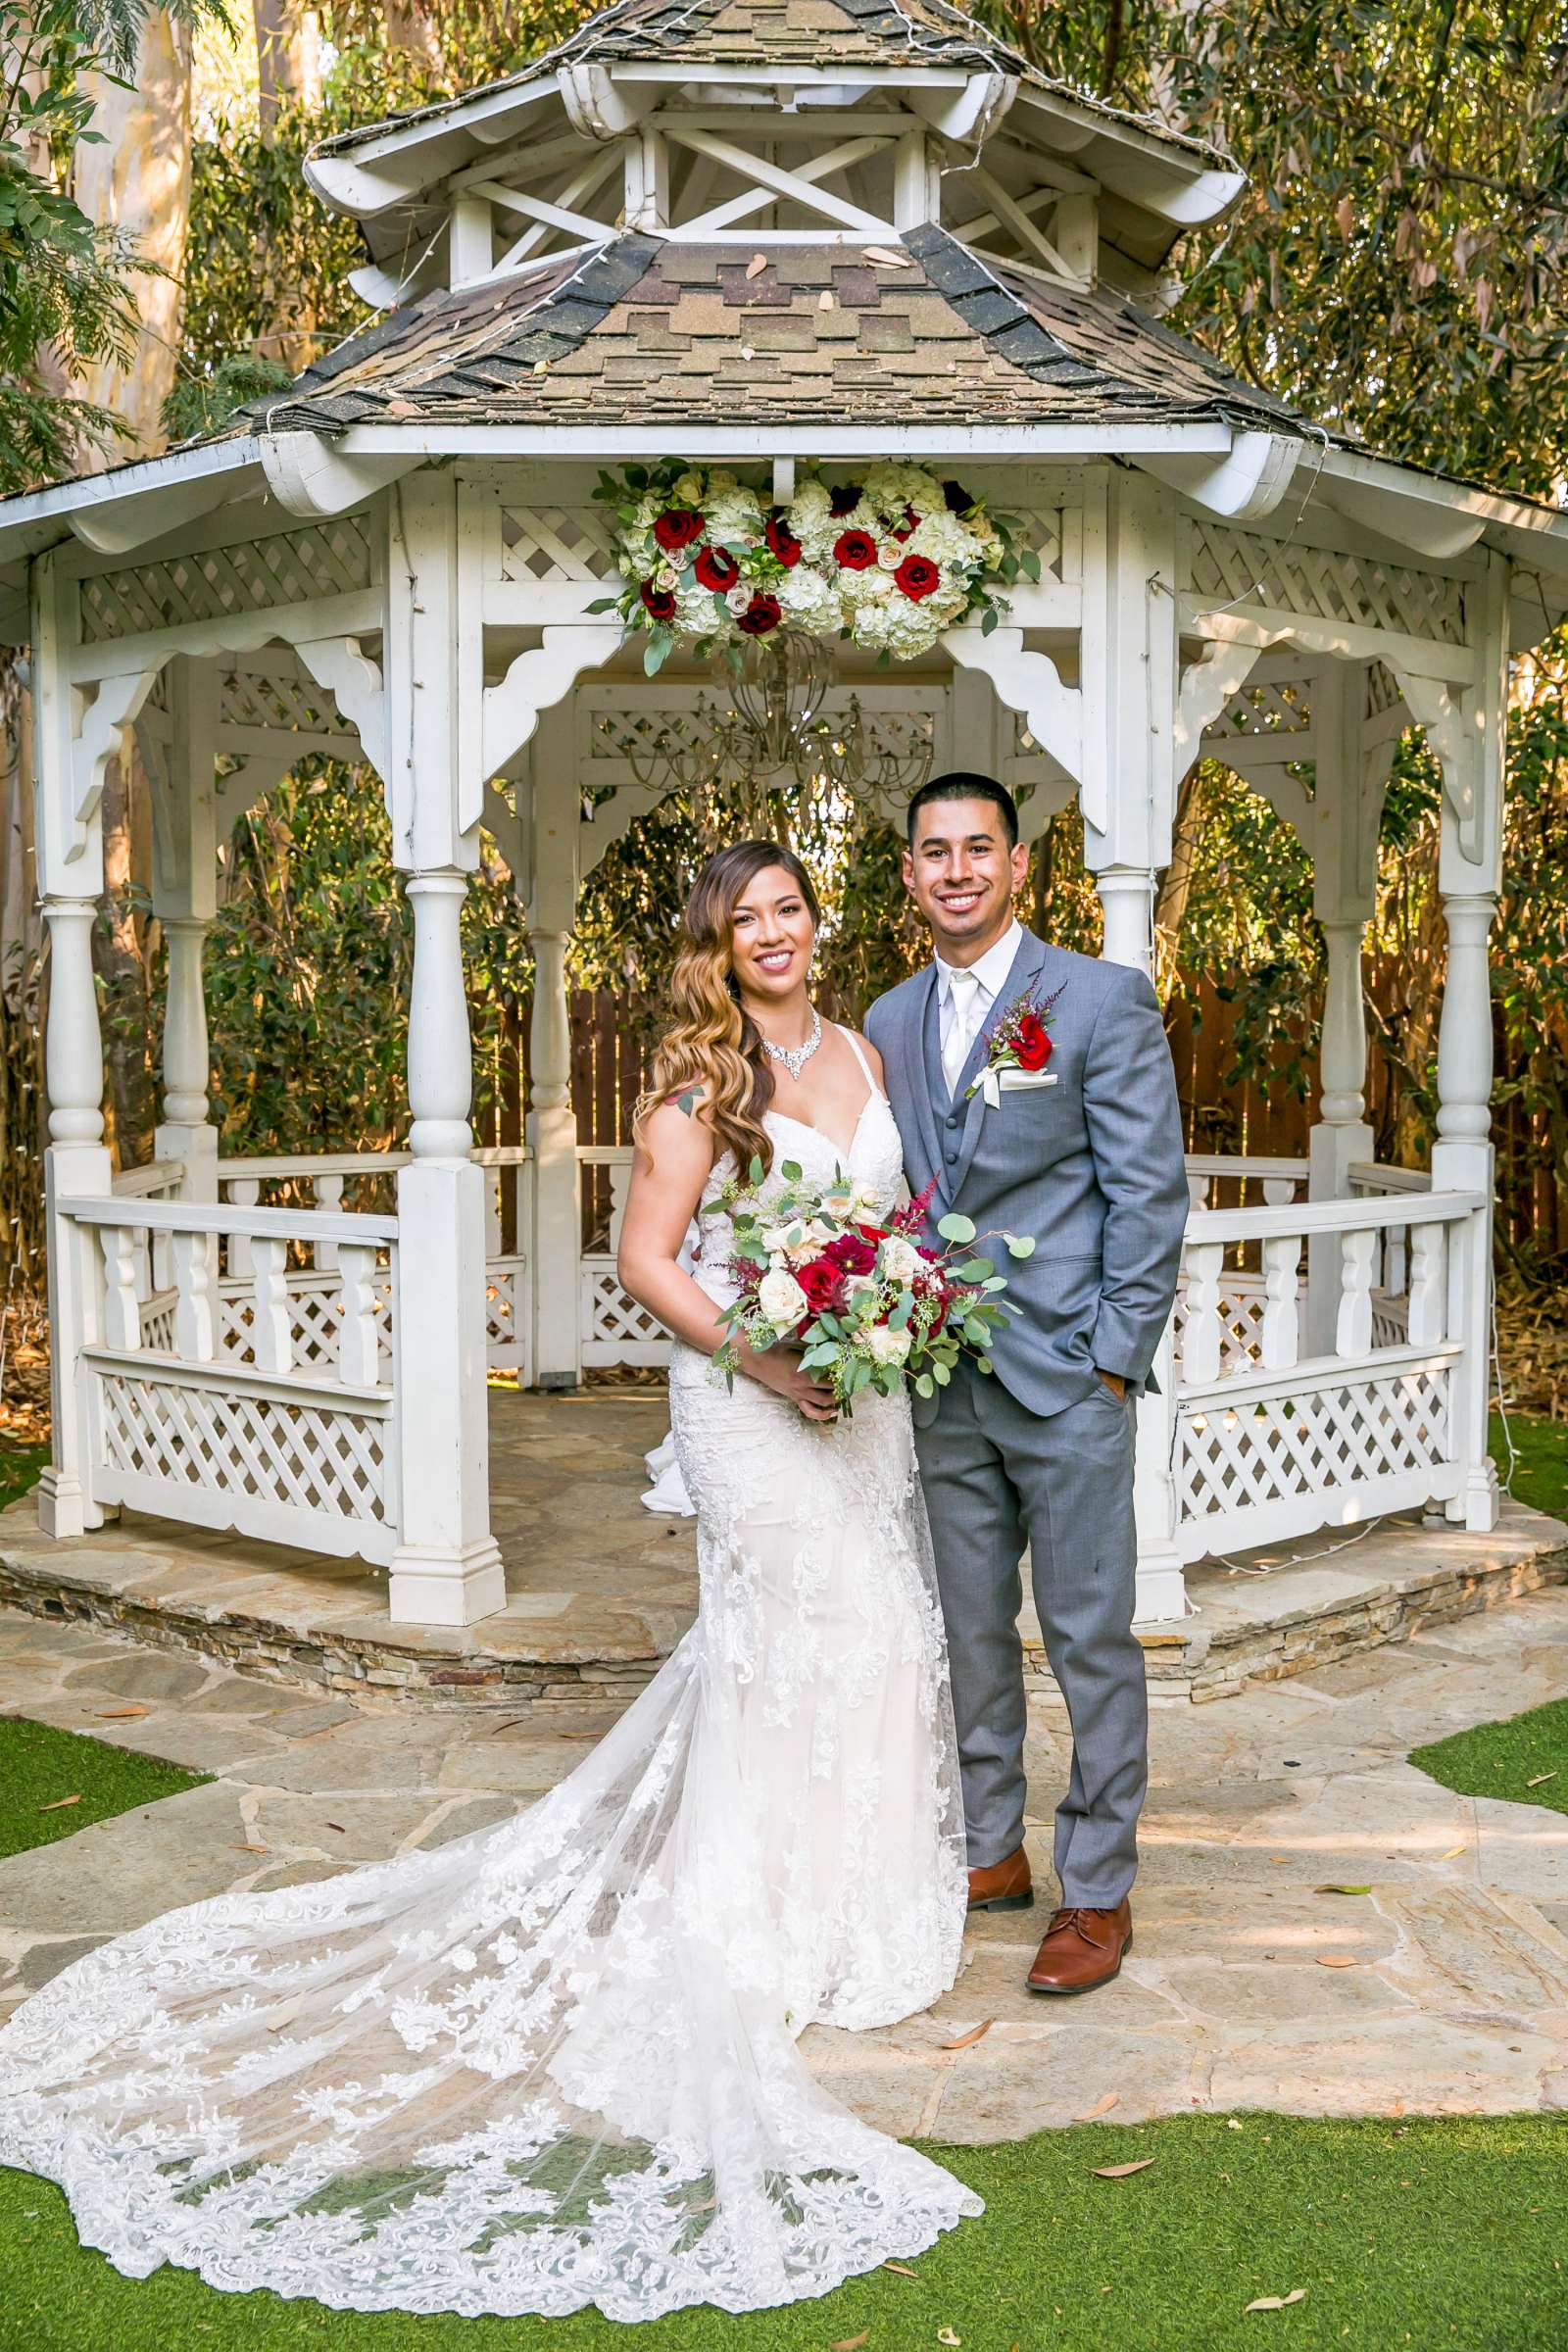 Twin Oaks House & Gardens Wedding Estate Wedding, Merrilynn and Trey Wedding Photo #6 by True Photography